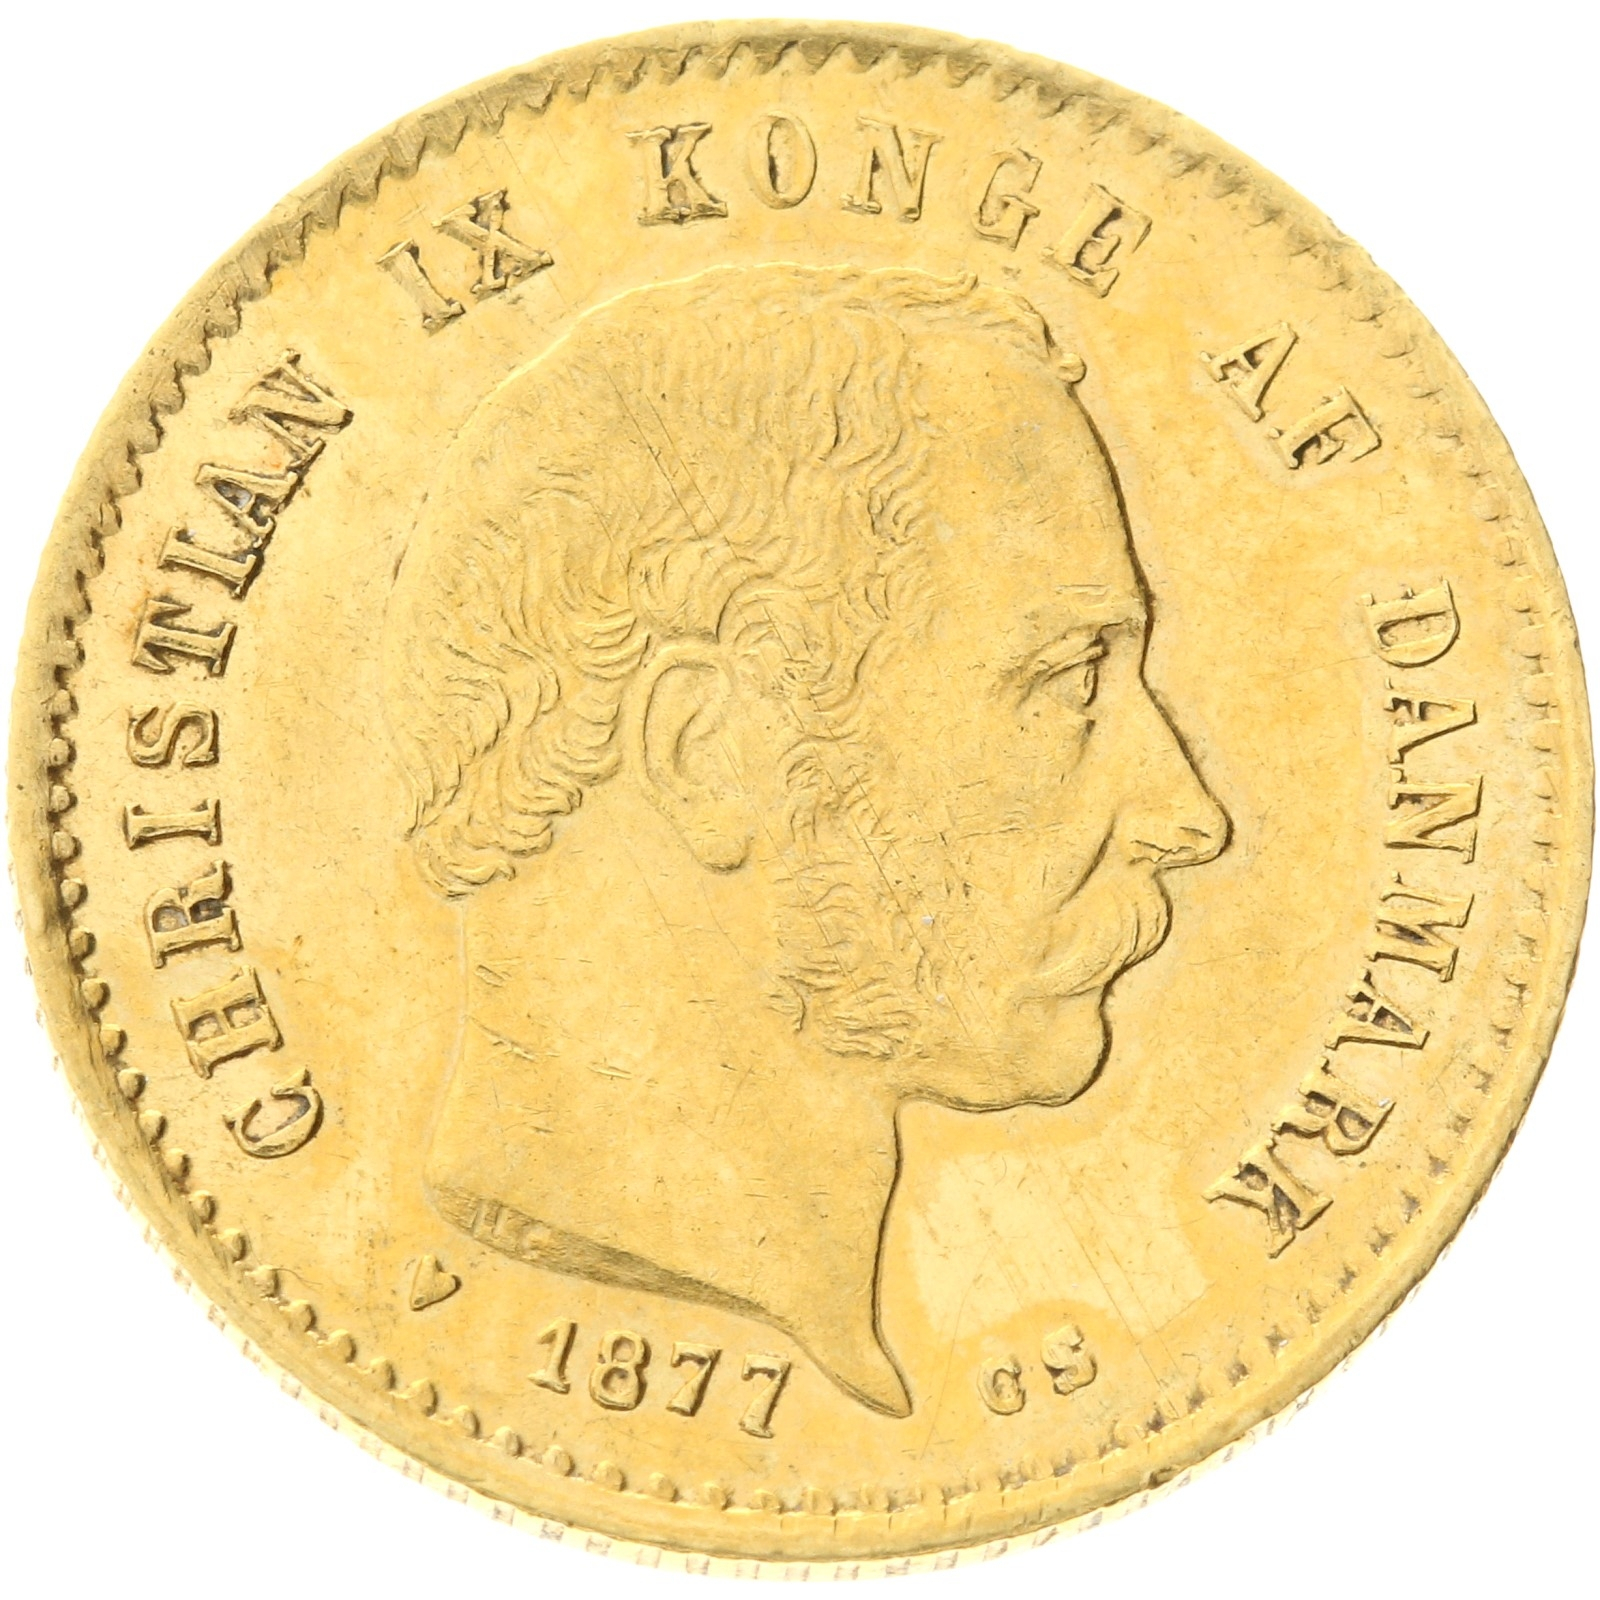 Denmark - 10 kroner - 1877 - Christian IX